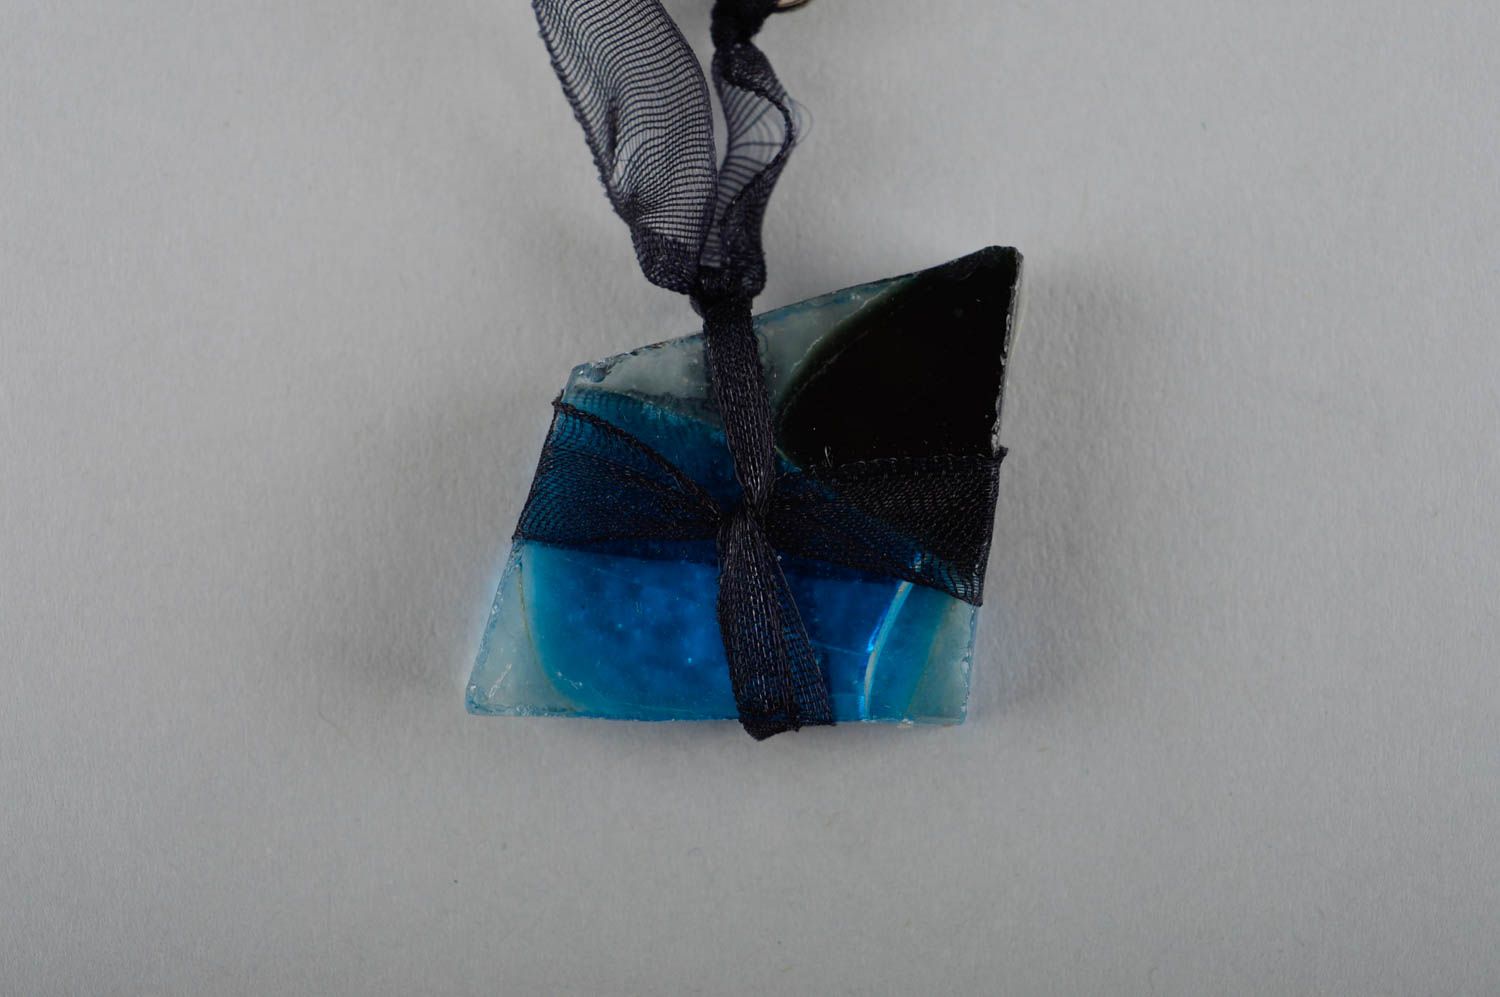 Colgante hecho a mano de color azul accesorio para mujer bisutería artesanal foto 3